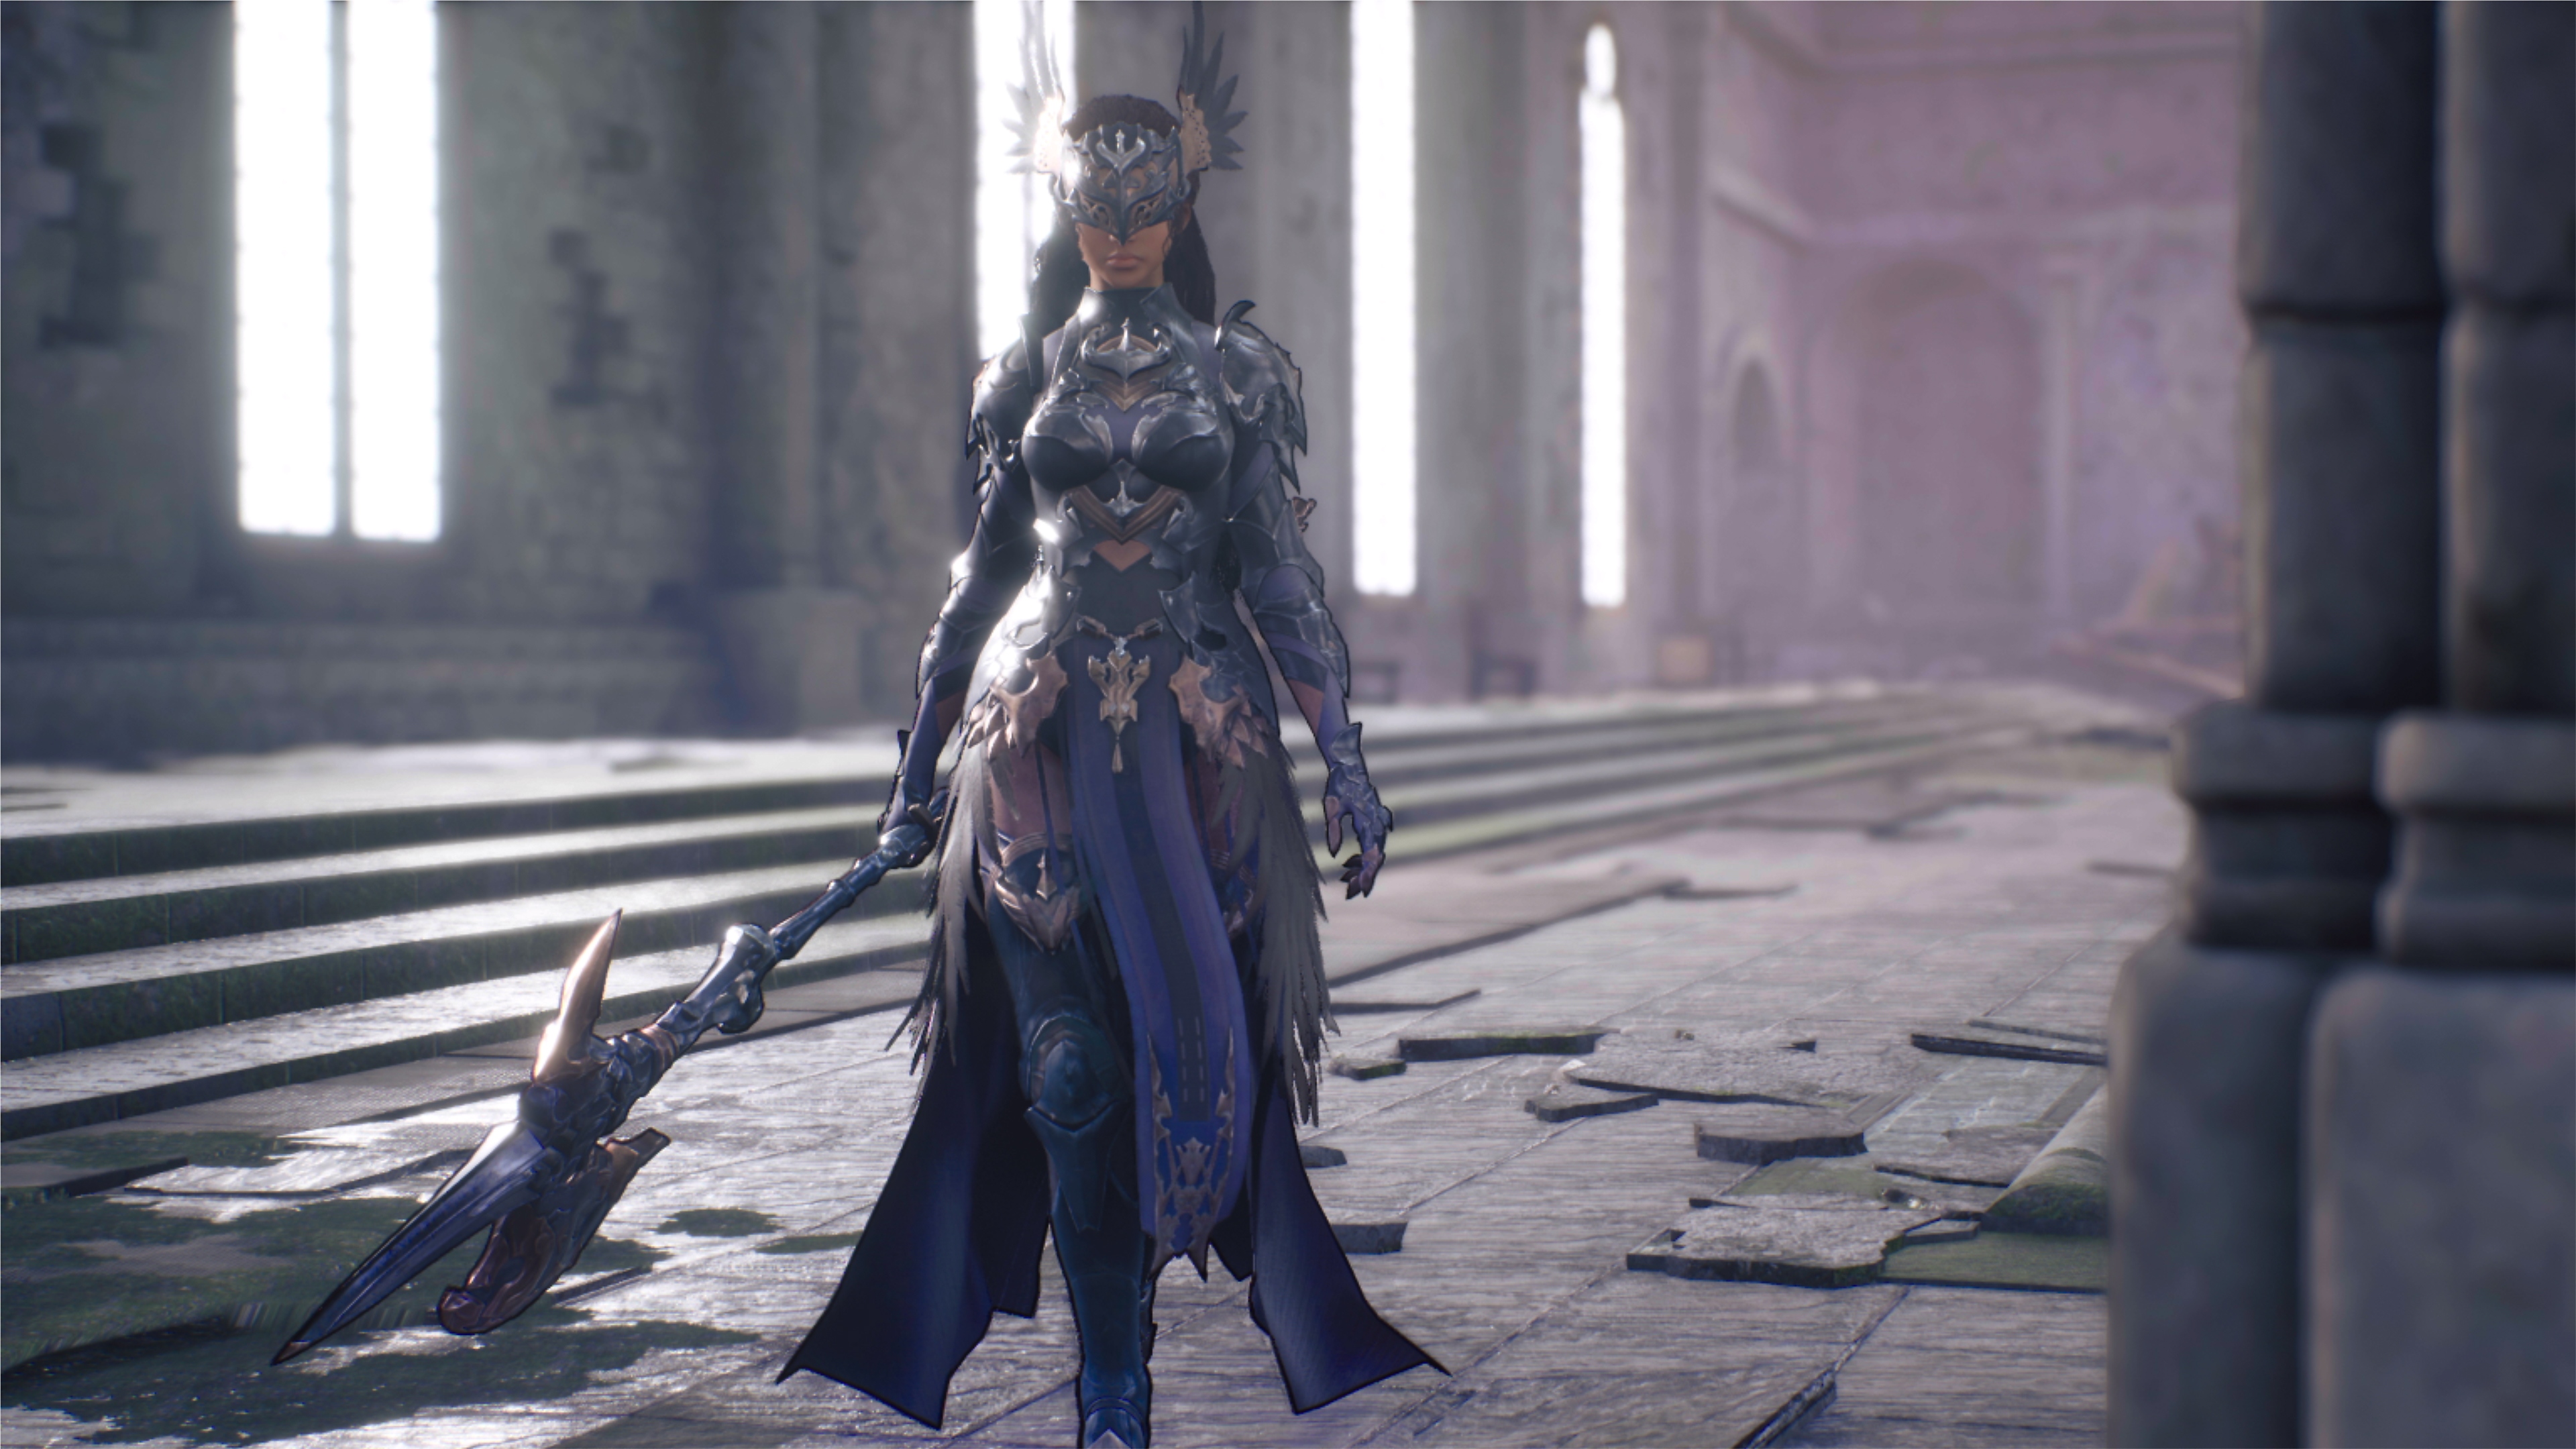 Valkyrie Elysium screenshot van een personage met een strijdbijl als wapen